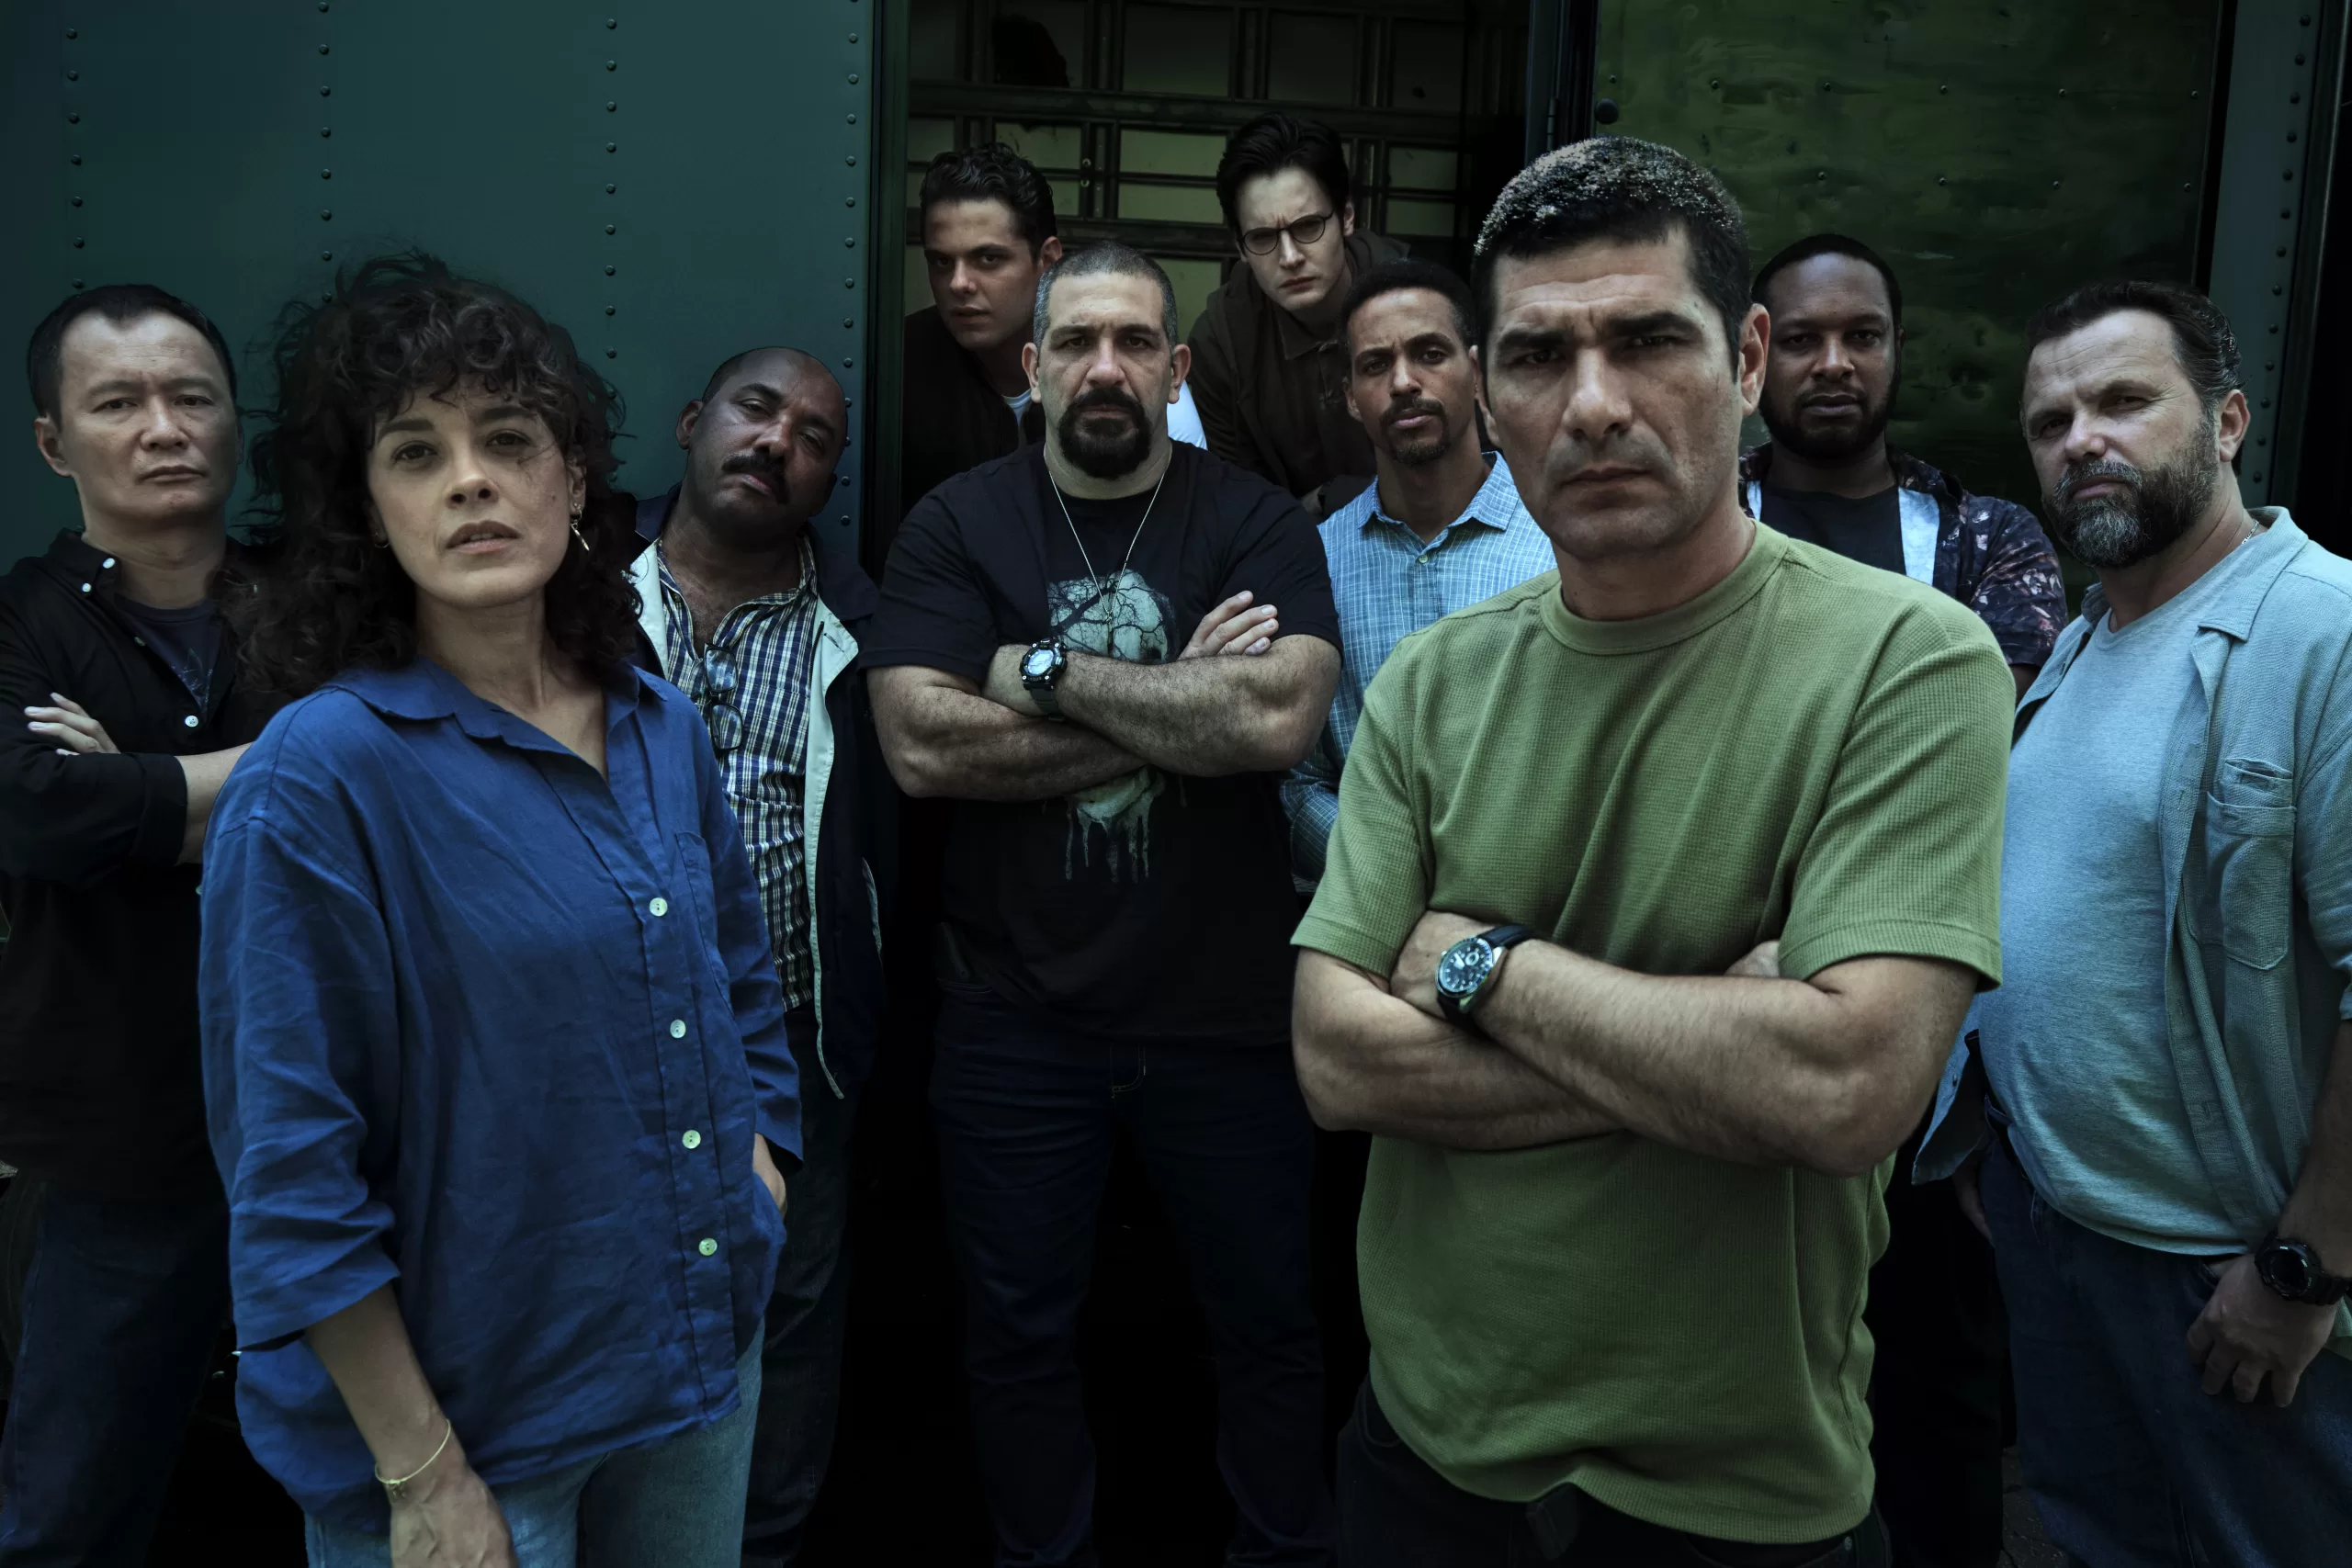 DNA do Crime, primeira série brasileira de ação policial da Netflix, estreia  em novembro